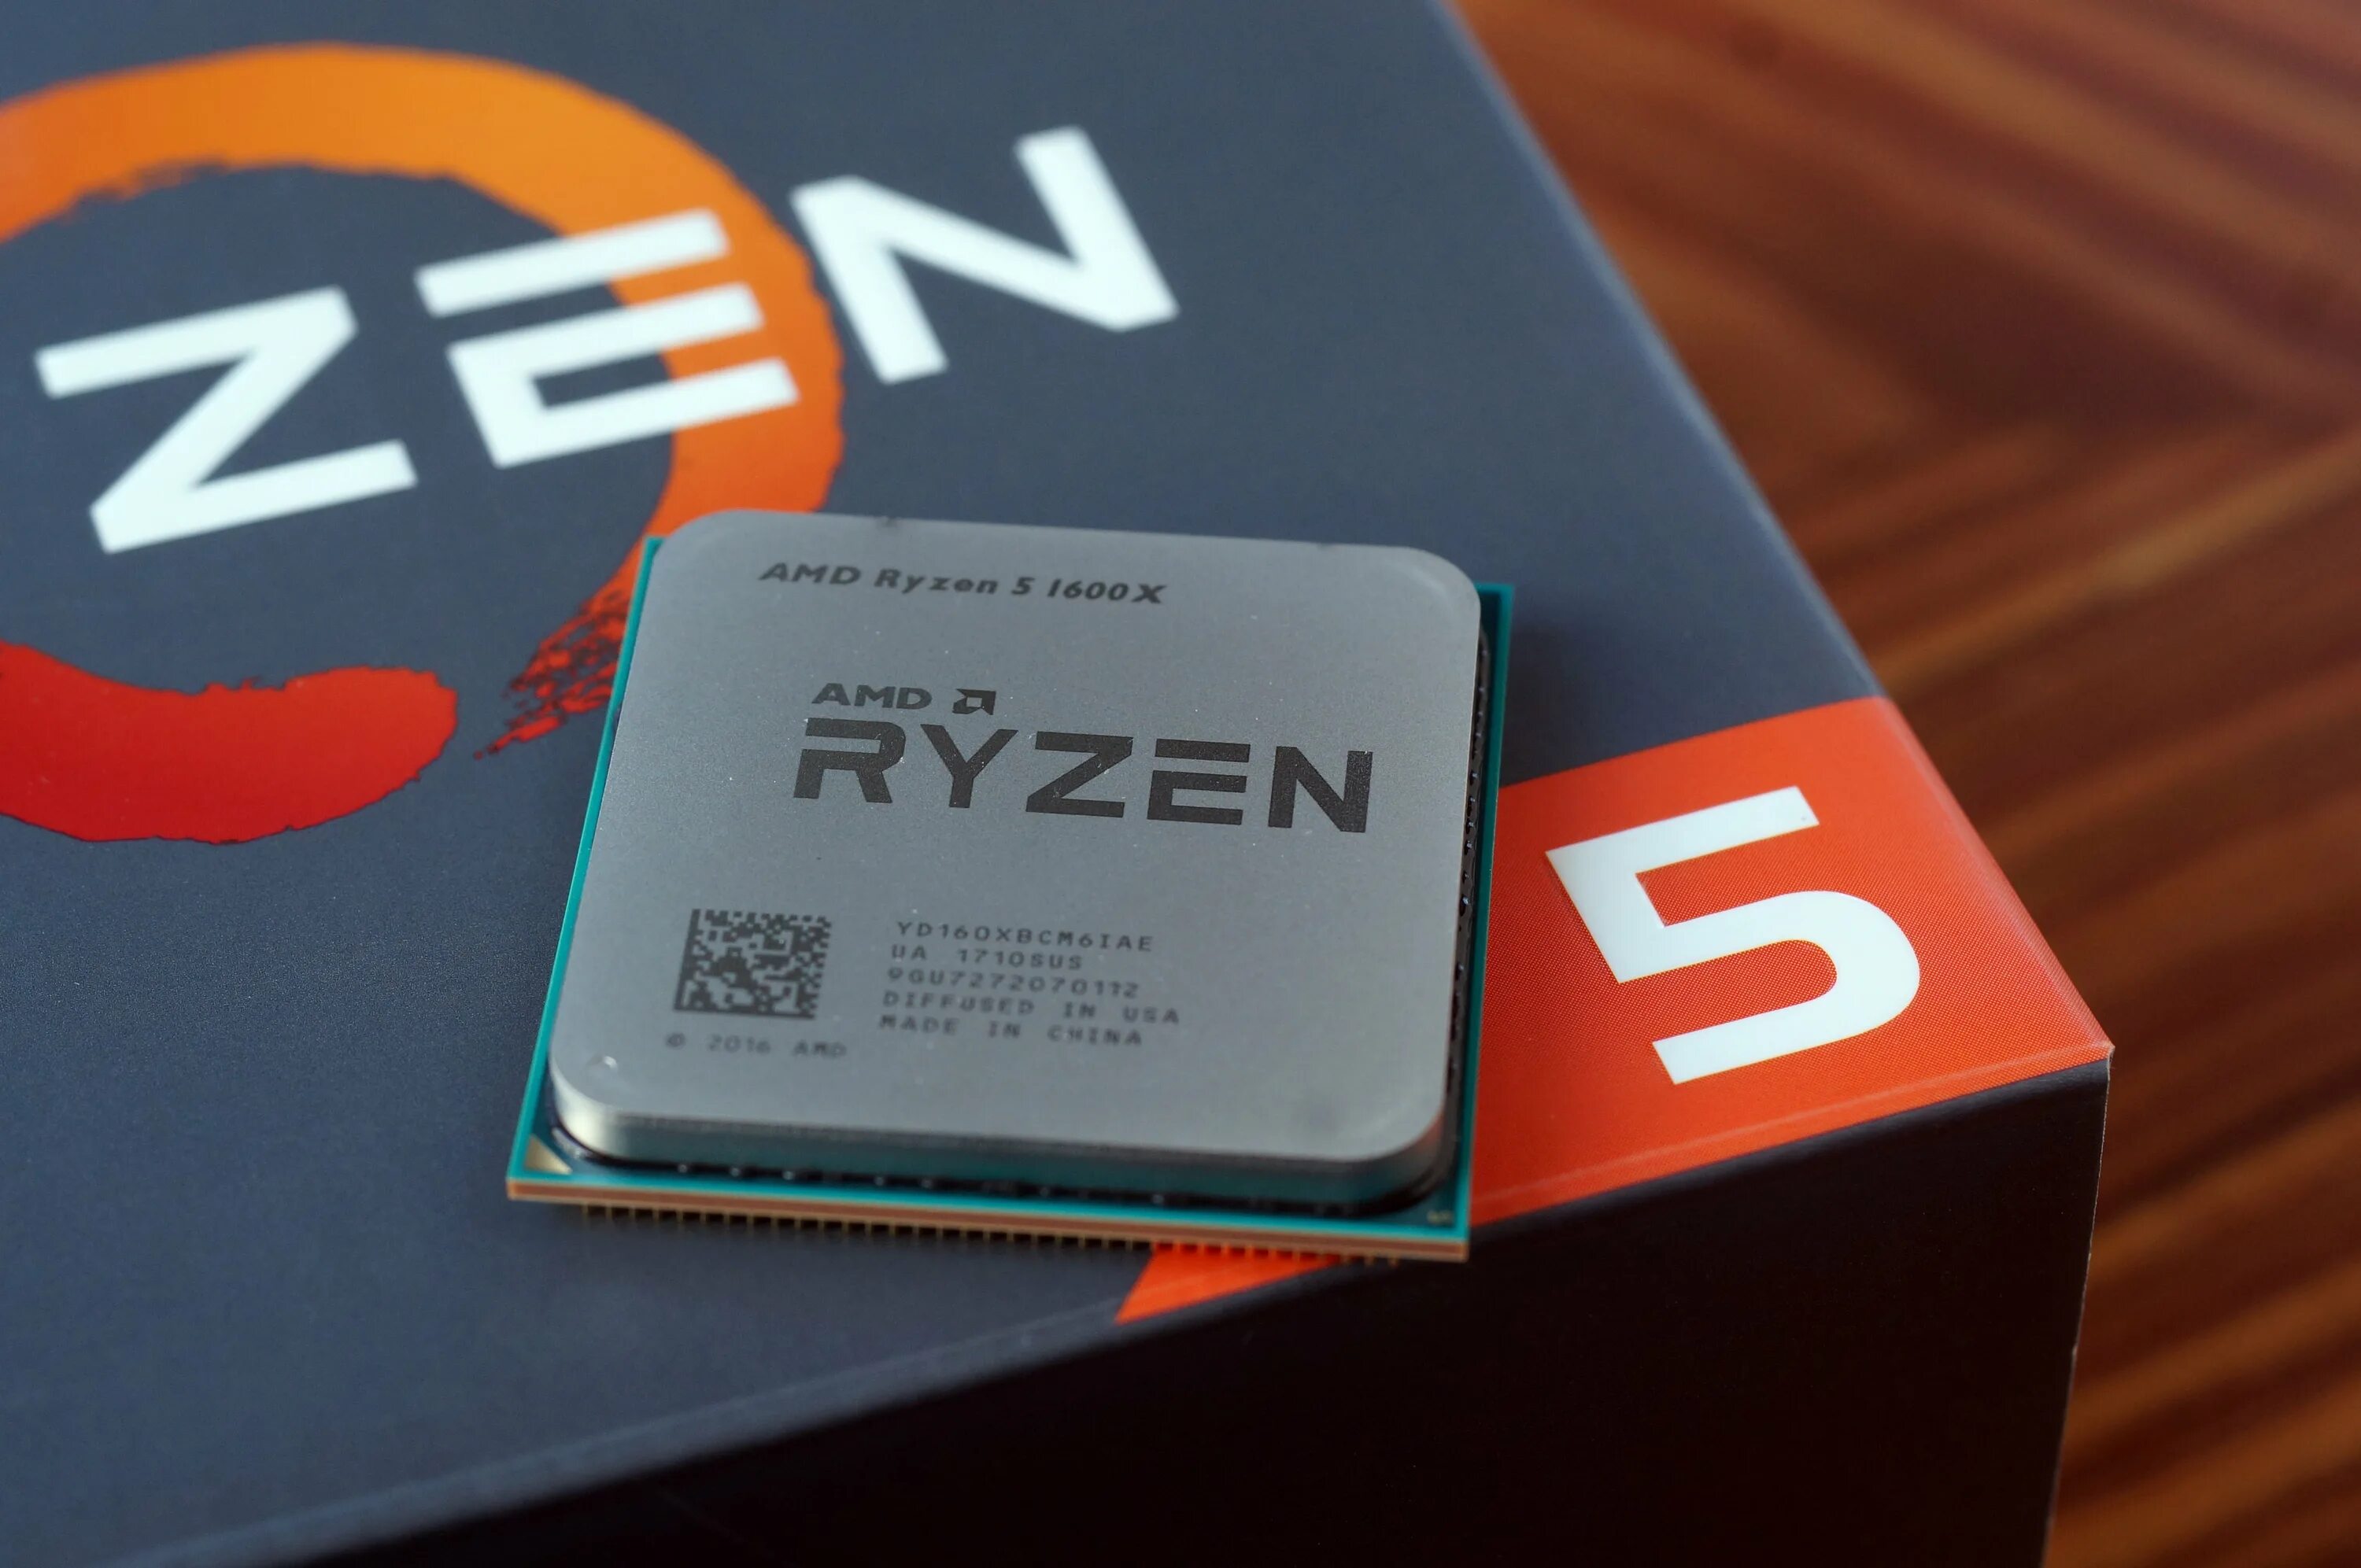 Тест райзен 5. Процессор AMD Ryzen 5. AMD Ryzen 5 2600. Ryzen 5 1600x. АМД райзен 5 1600.